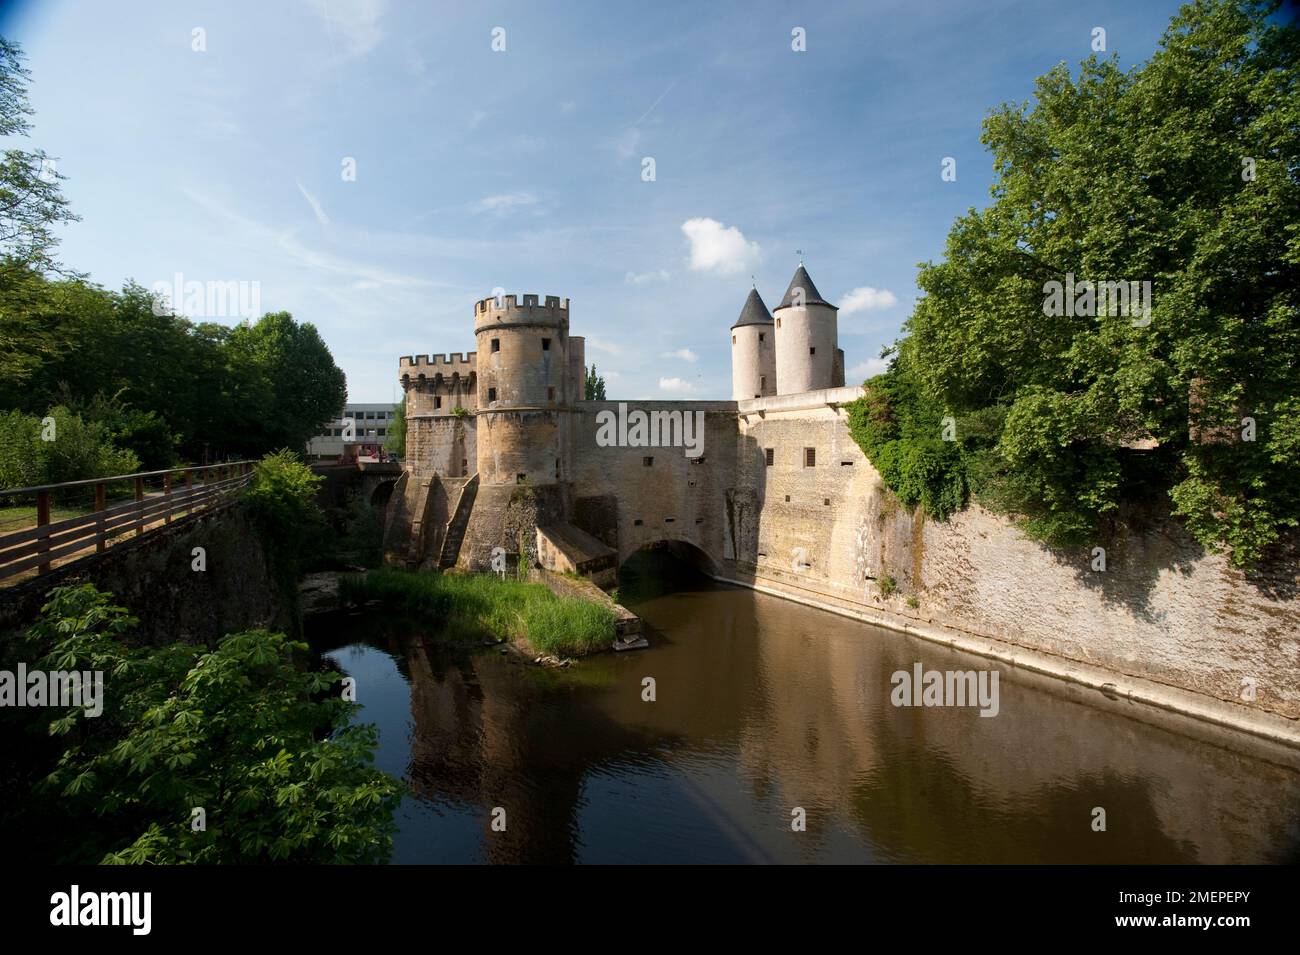 France, Lorraine, Metz, Germans' Gate (Porte des Allemands), 13th century medieval bridge castle Stock Photo